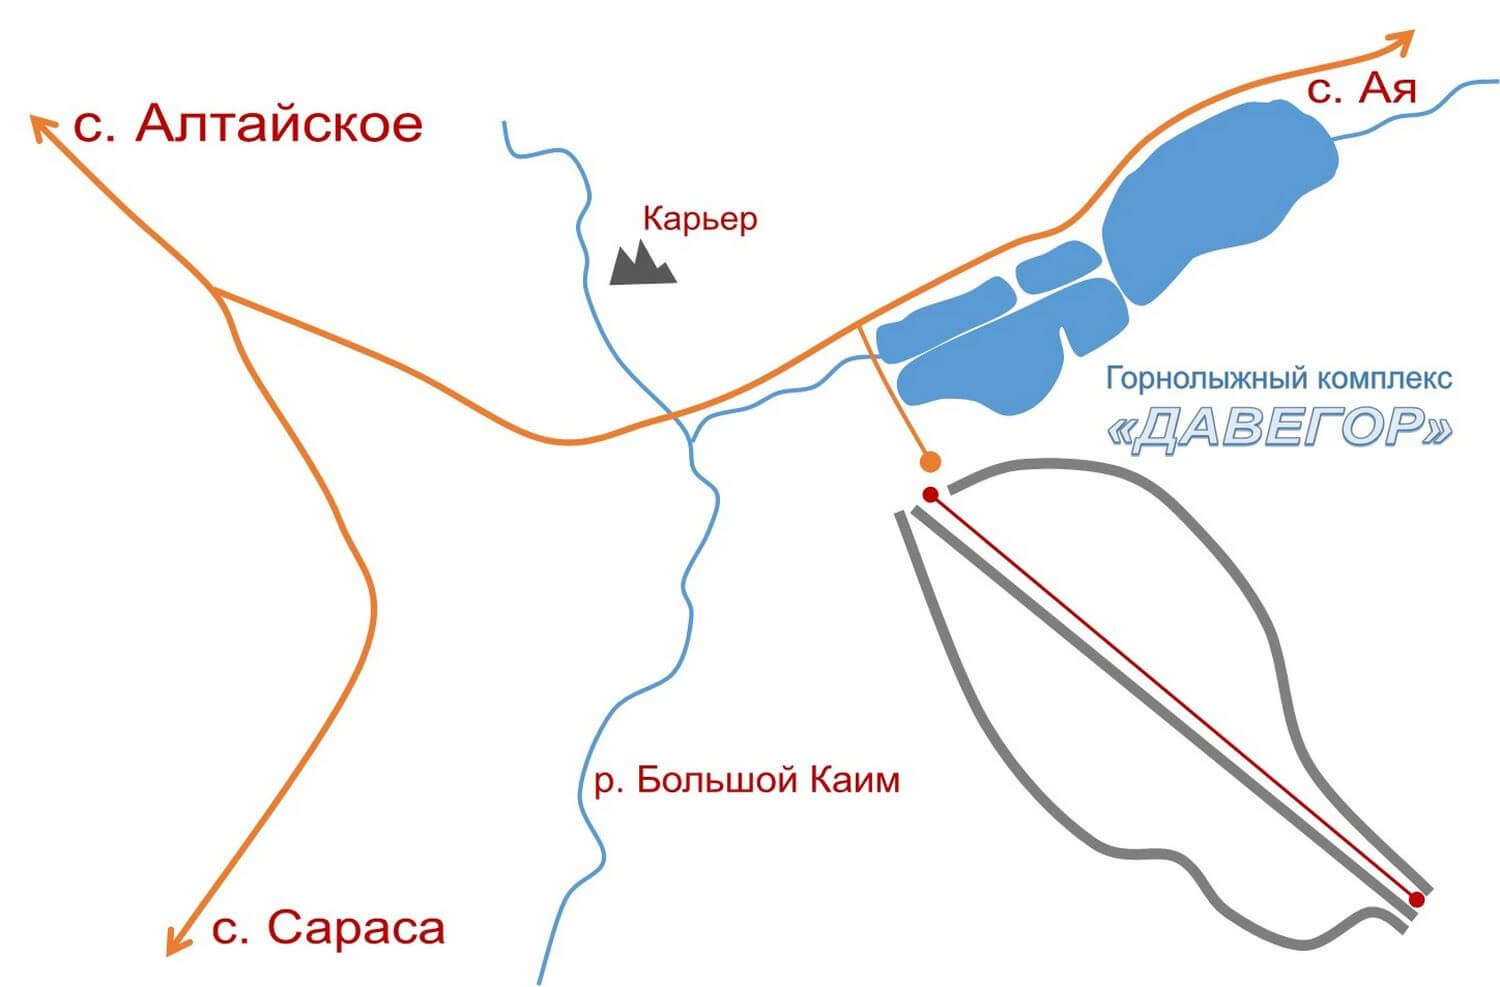 Схема проезда до горнолыжного комплекса «Давегор»